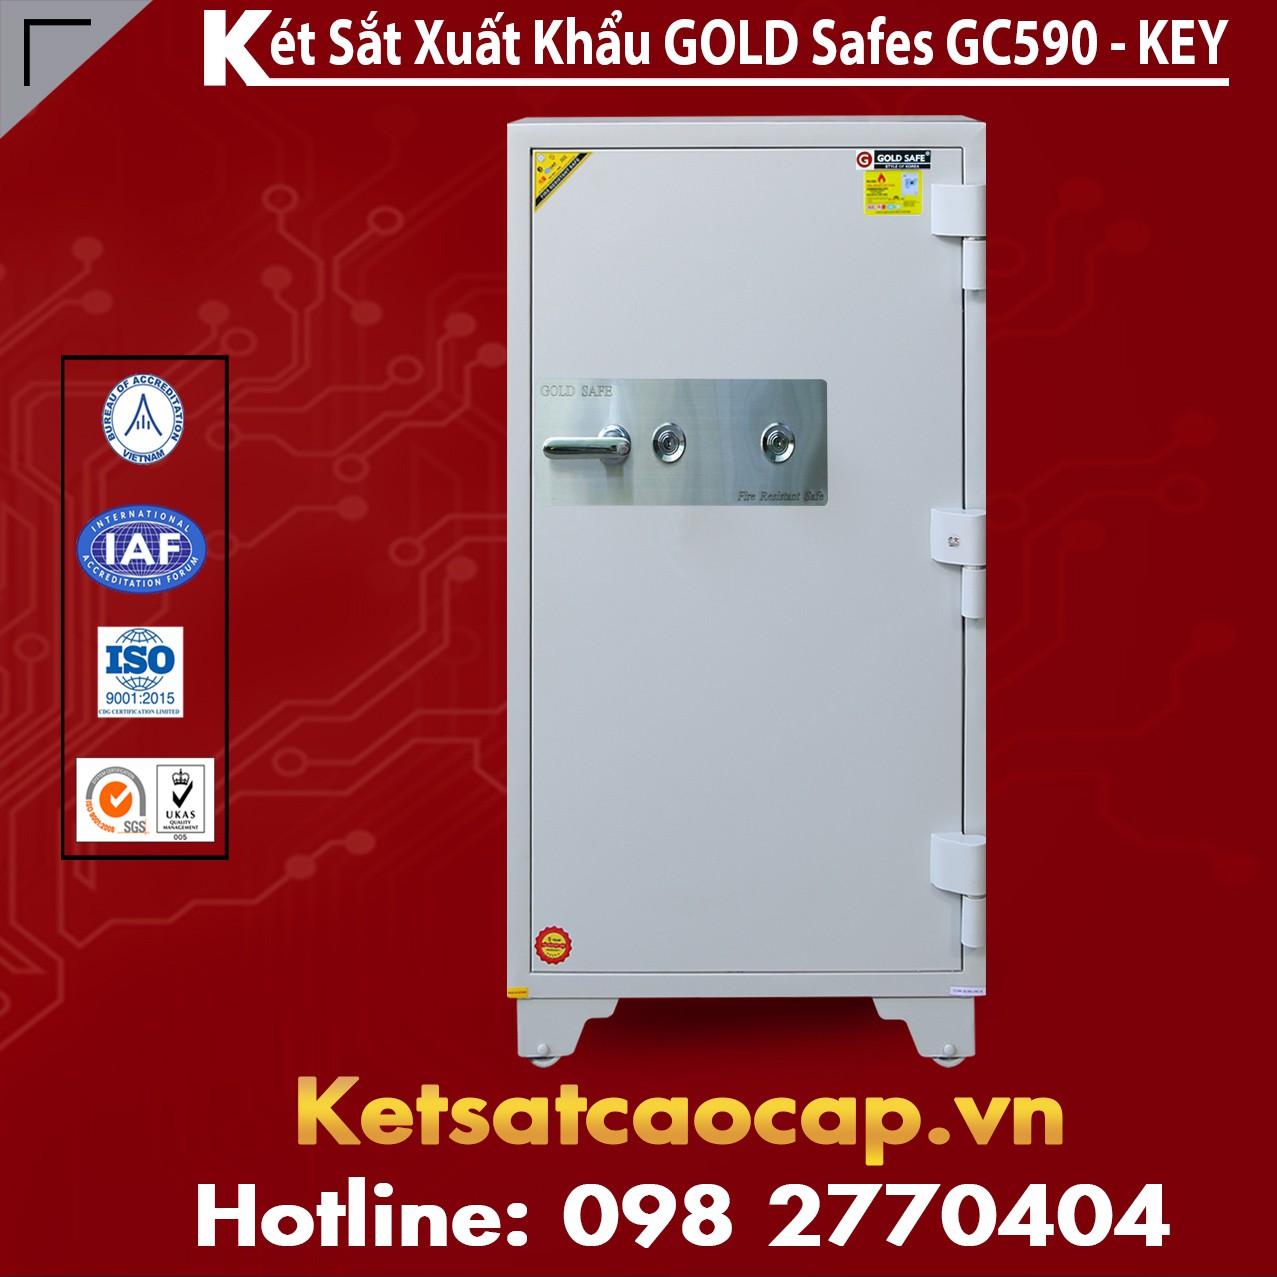 Két Sắt Đại Gia GOLD SAFES GC590 KEY